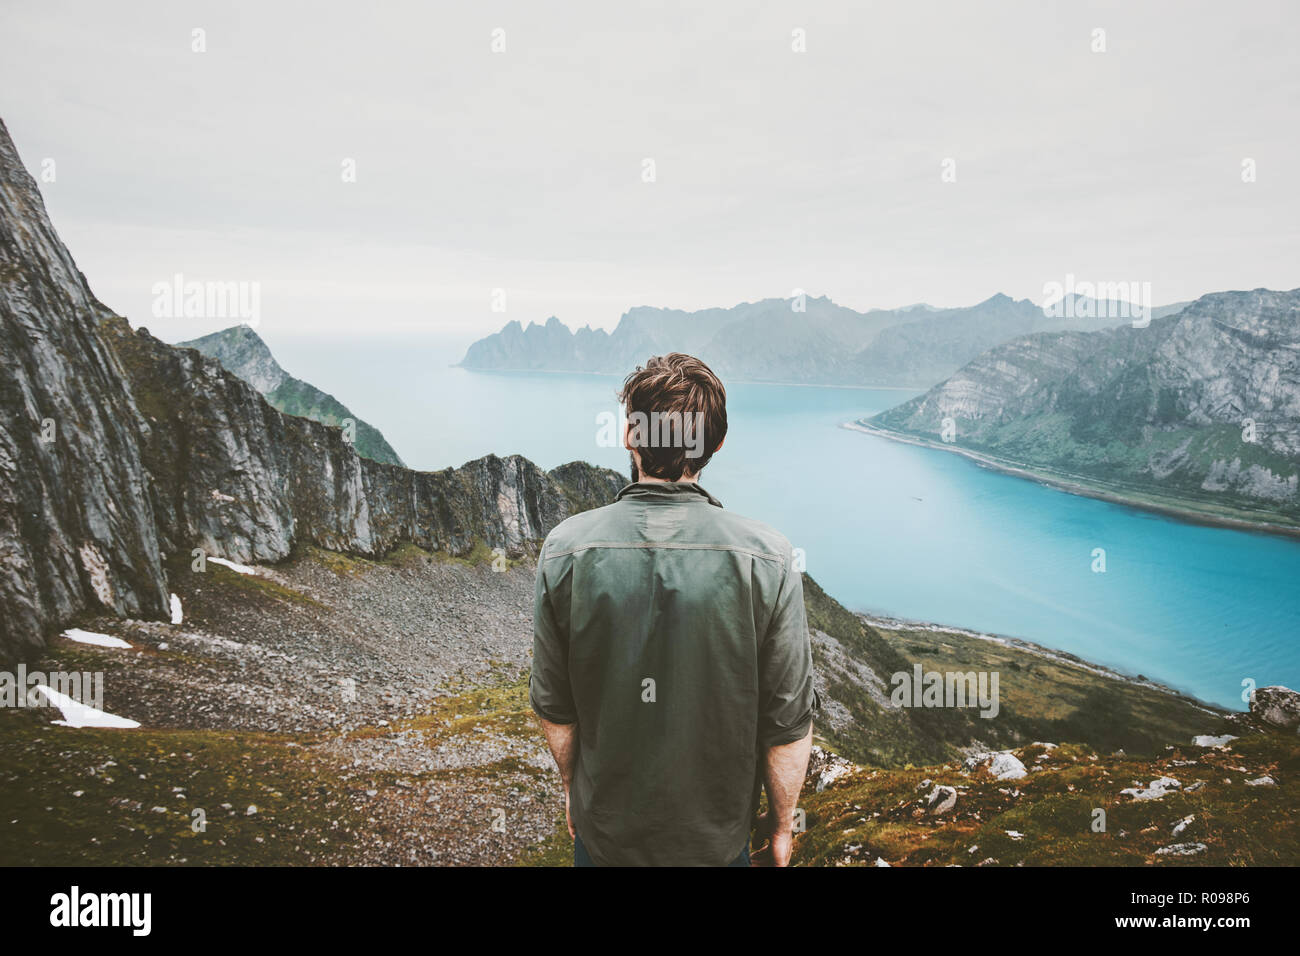 L'uomo avventuriero ammirando fjord e vista montagne Travel lifestyle adventure concept vacanze outdoor in Norvegia la solitudine pacate emozioni Foto Stock